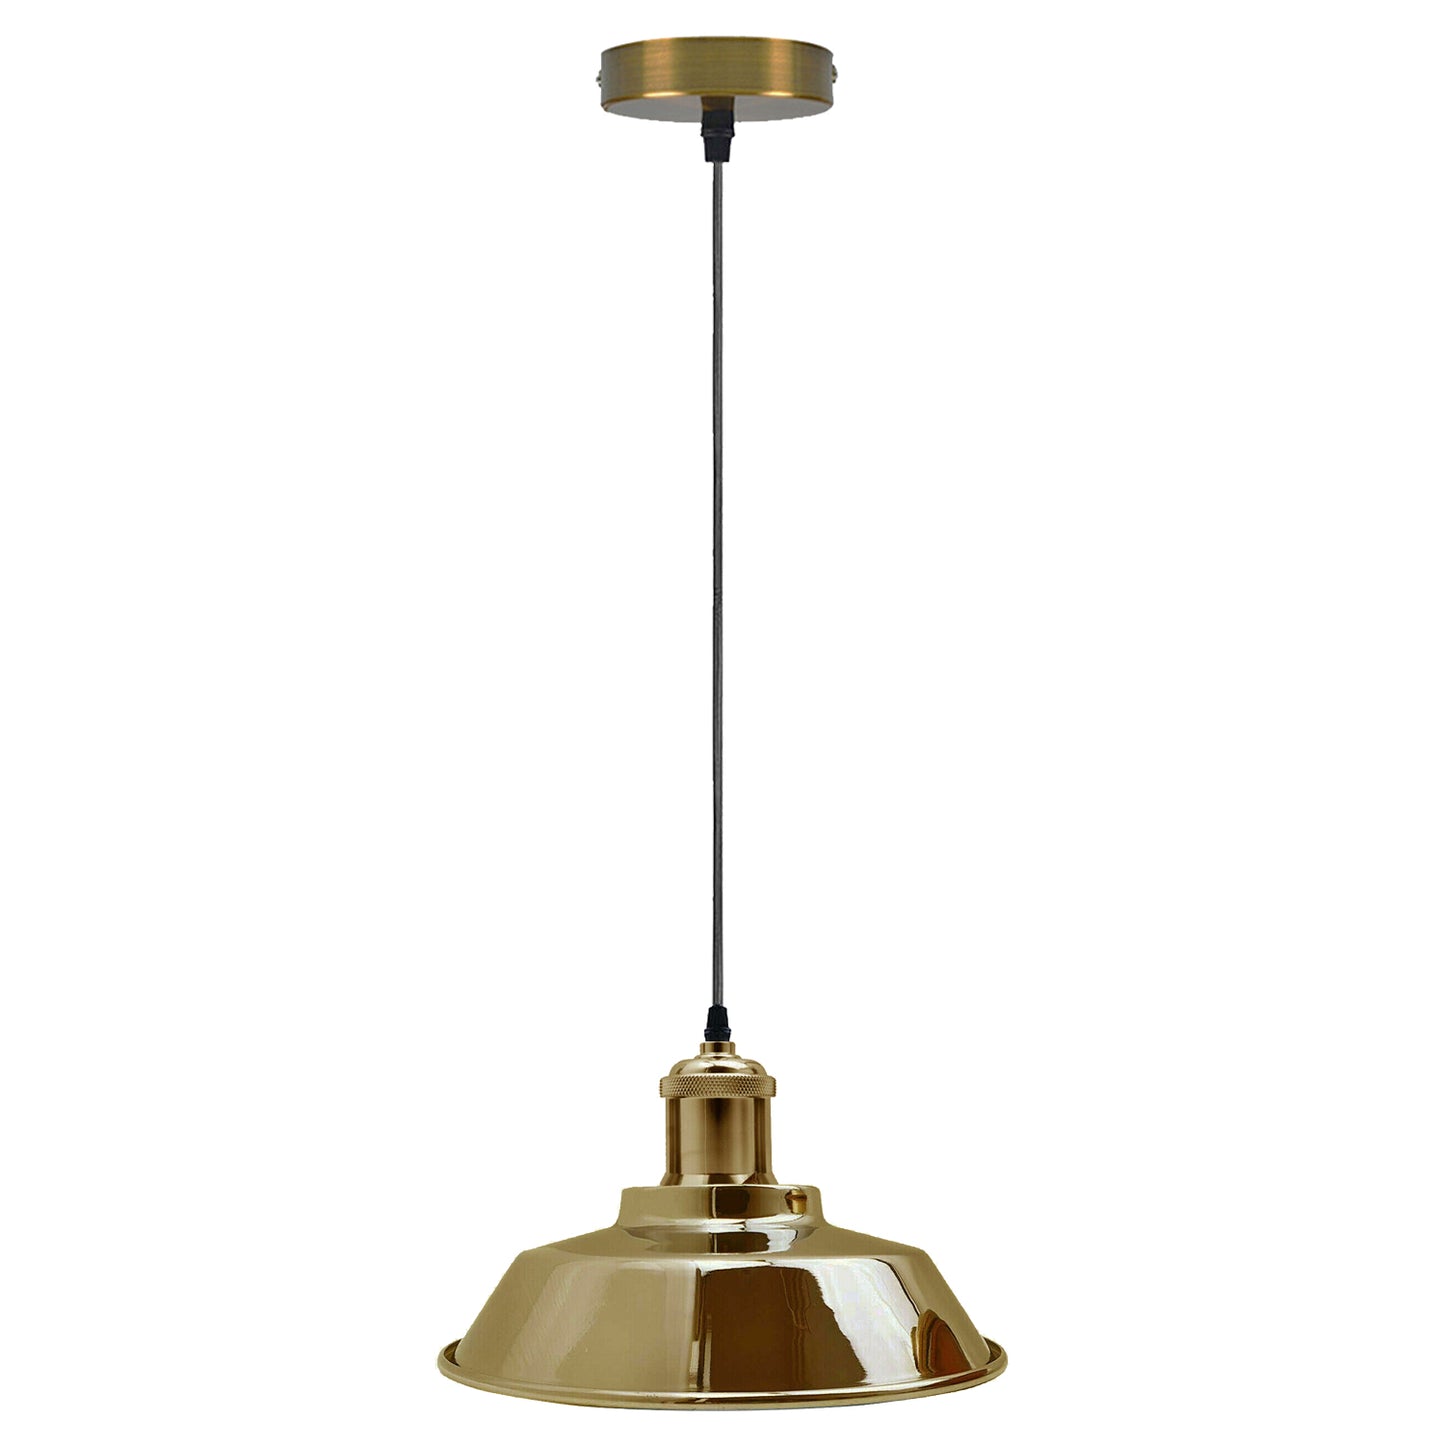 Vintage Modern Industrial Deckenlampenschirm Pendelleuchte Retro Loft French Gold